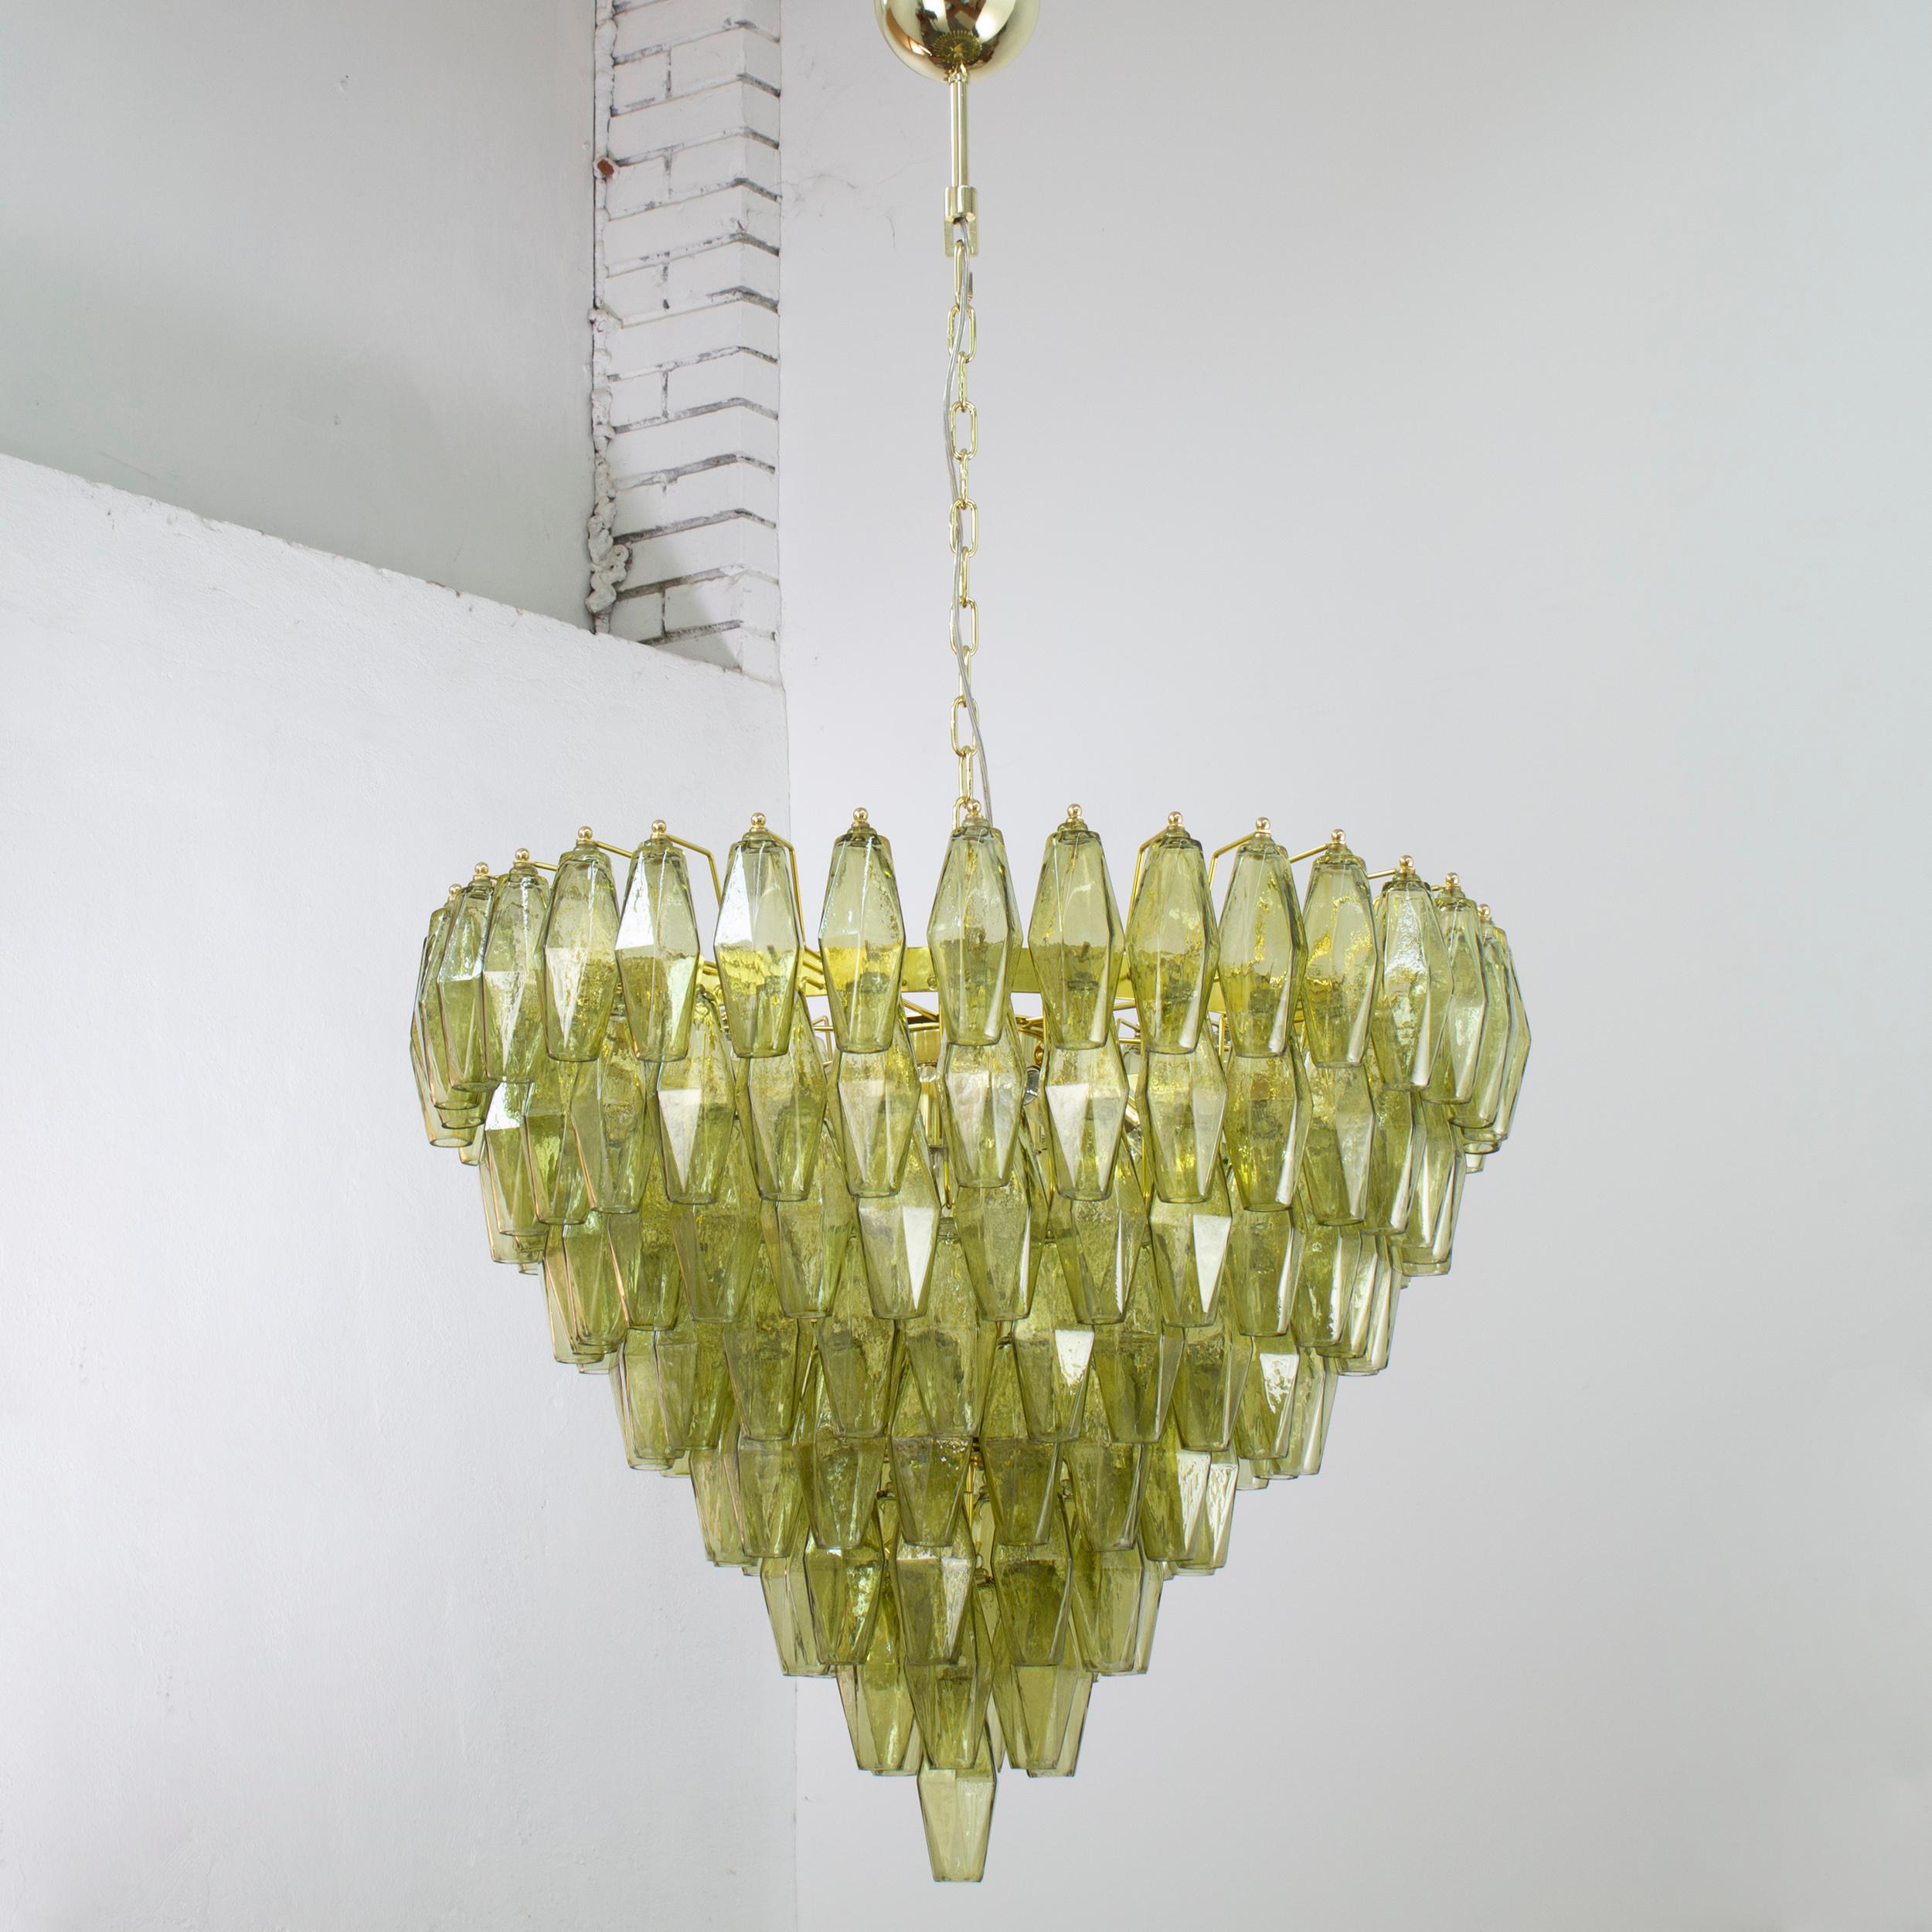 Grande lampe en verre de Murano, couleur verte, inspirée du style italien du milieu du siècle dernier.

Directement à partir de l'écran :
Nous ne sommes pas de simples fournisseurs, mais des producteurs directs ! Situées à proximité de Venise, au